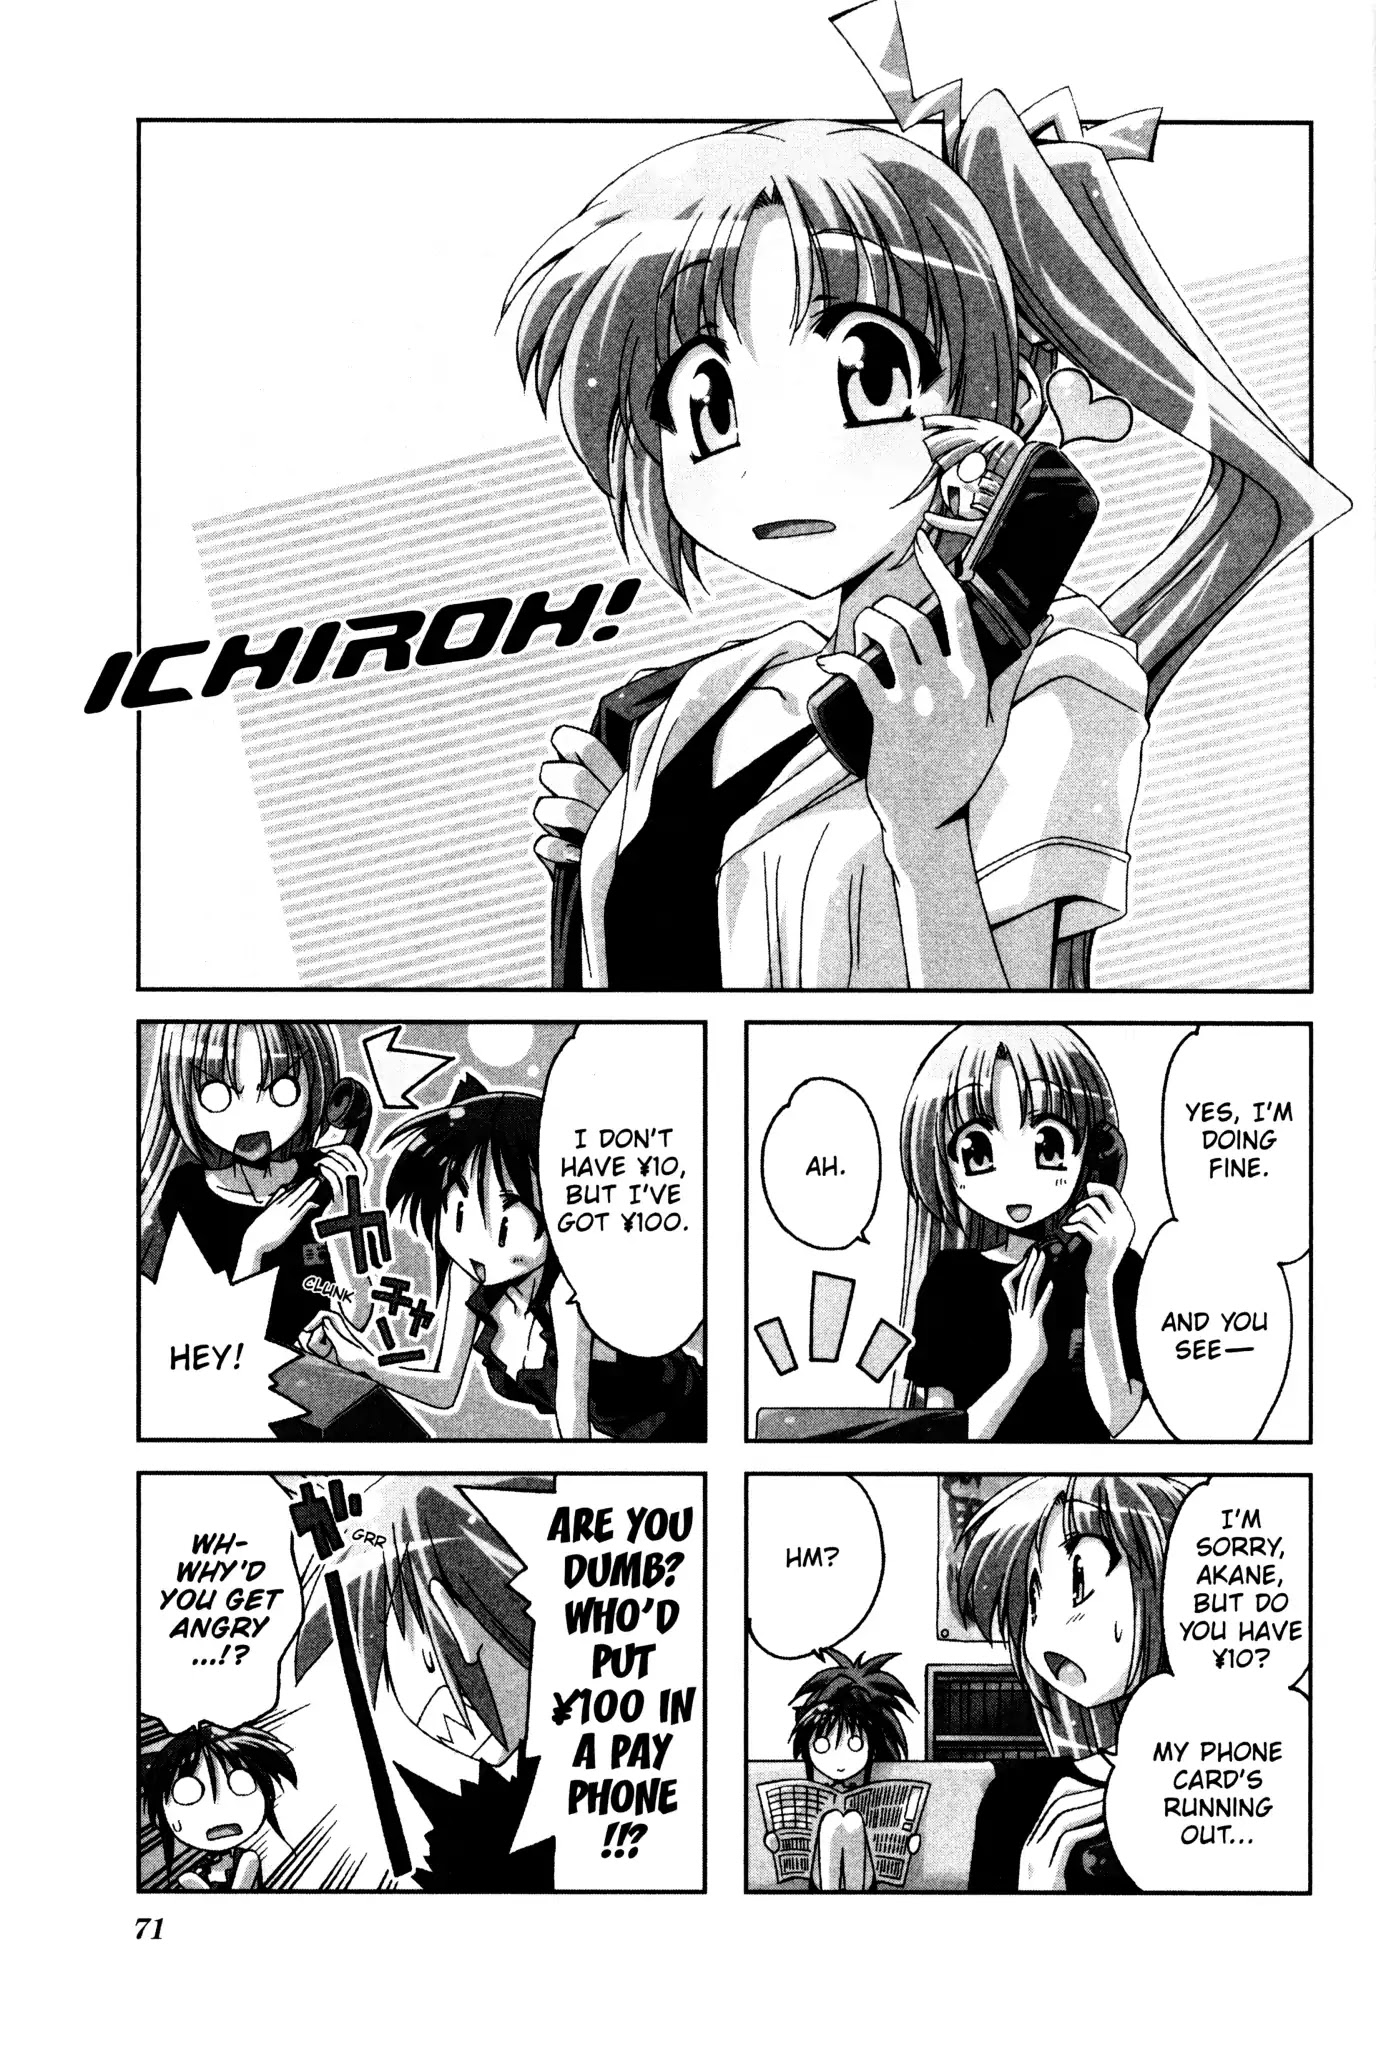 Ichiroh! Chapter 26 #1